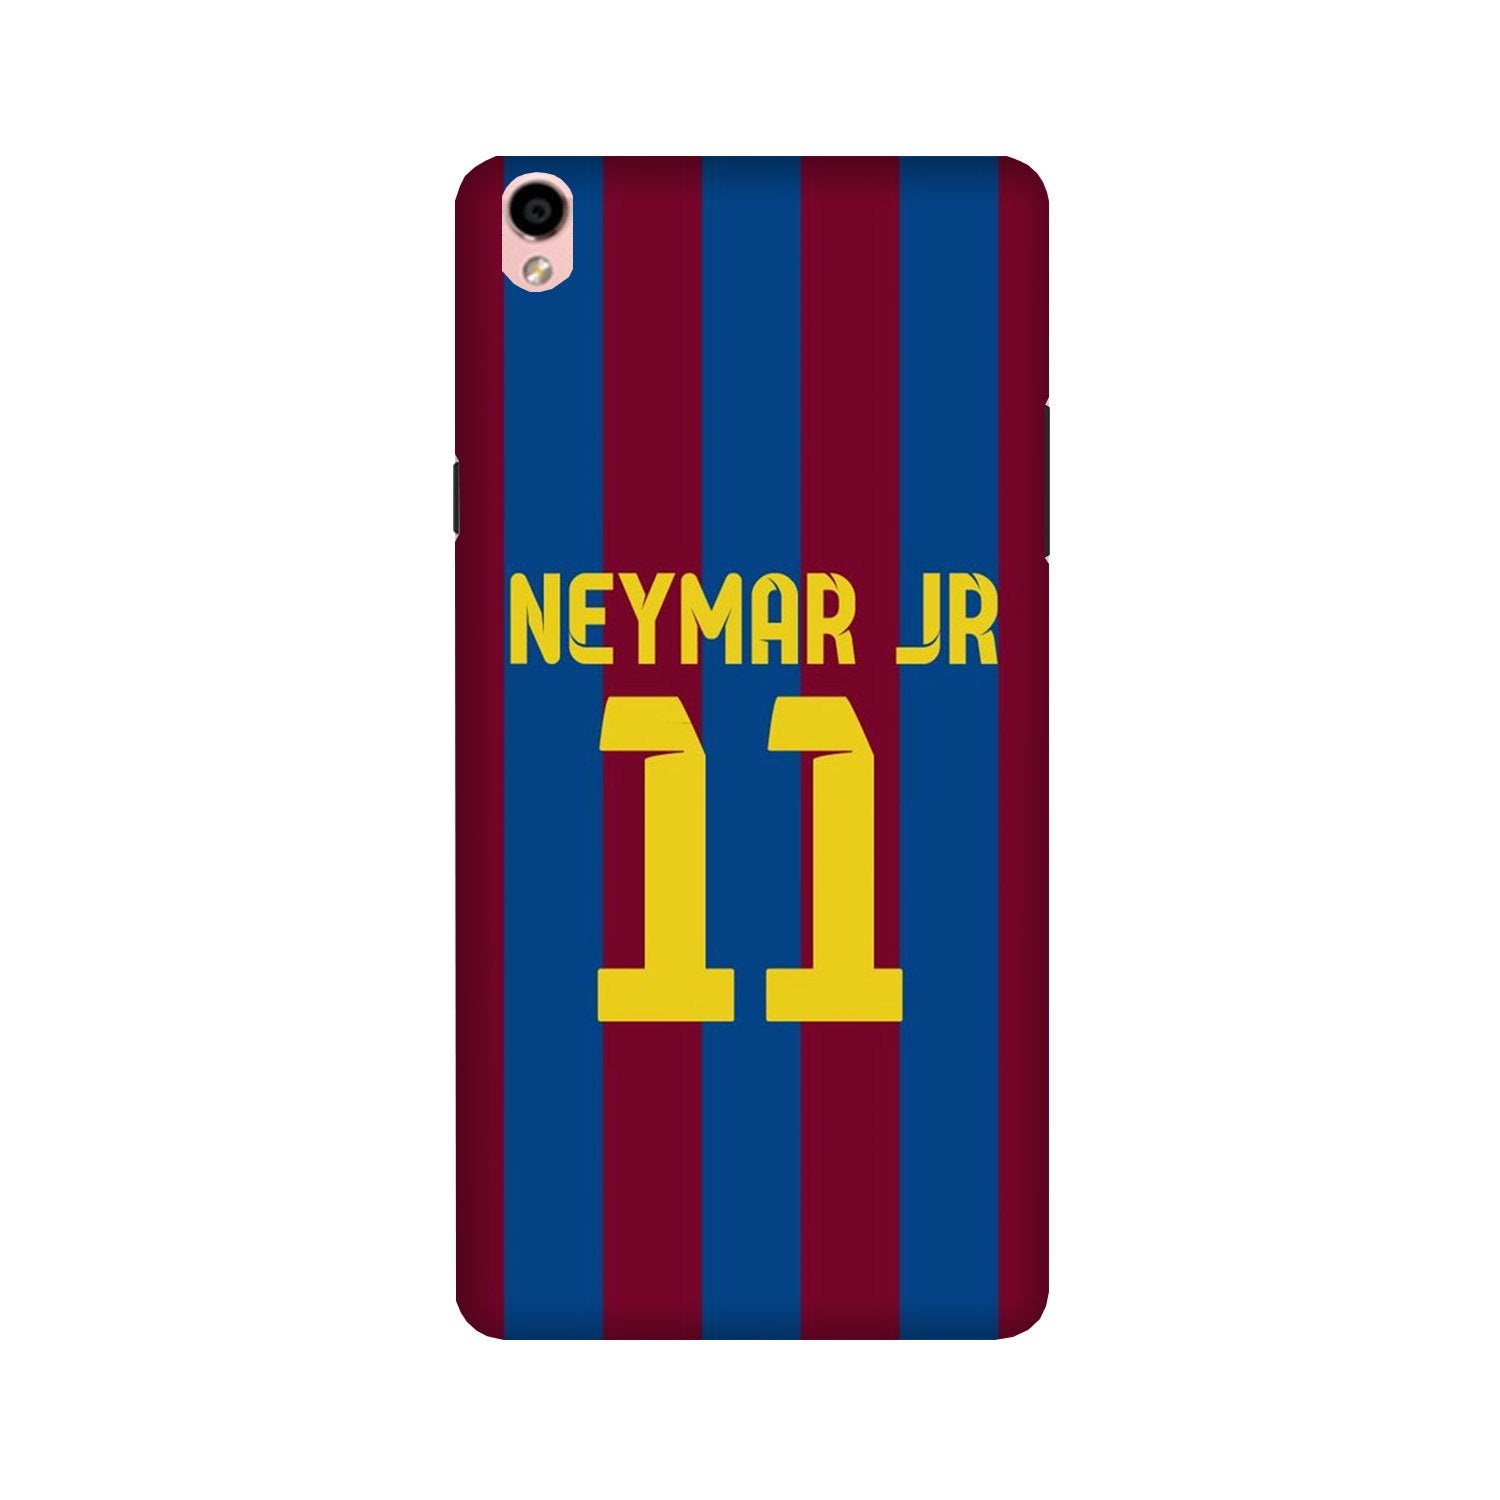 Neymar Jr Case for Oppo F1 Plus(Design - 162)